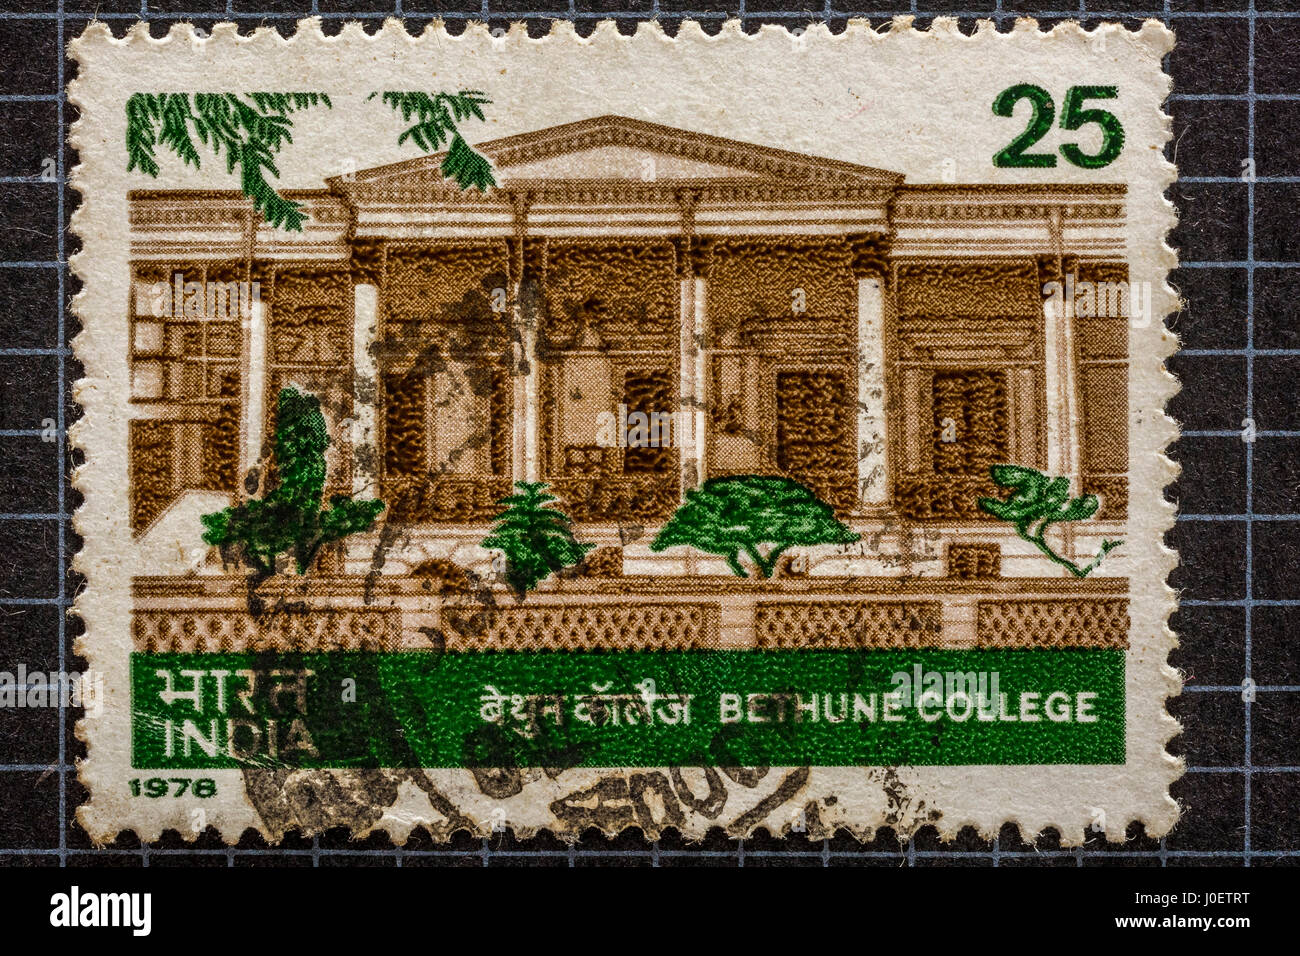 Bethune college, kolkata, postage stamps, india, asia Stock Photo